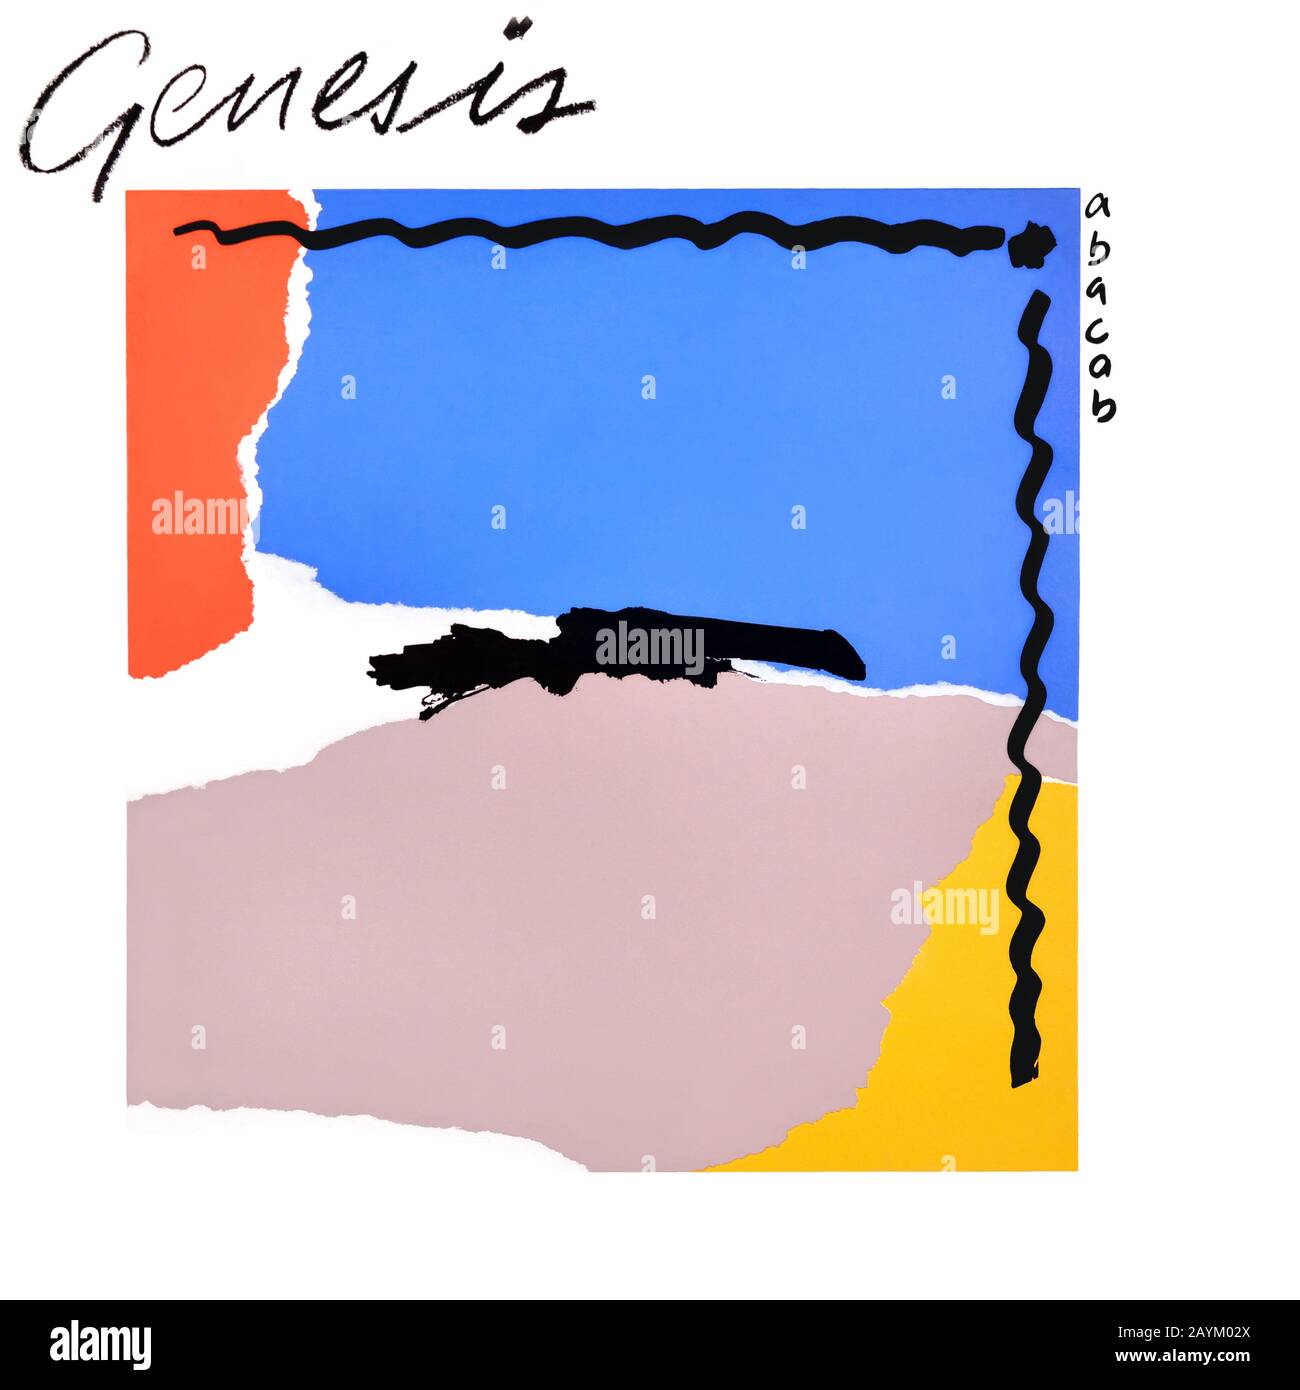 Genesis - original Vinyl Album Cover - Abacab - 1981 Stockfoto